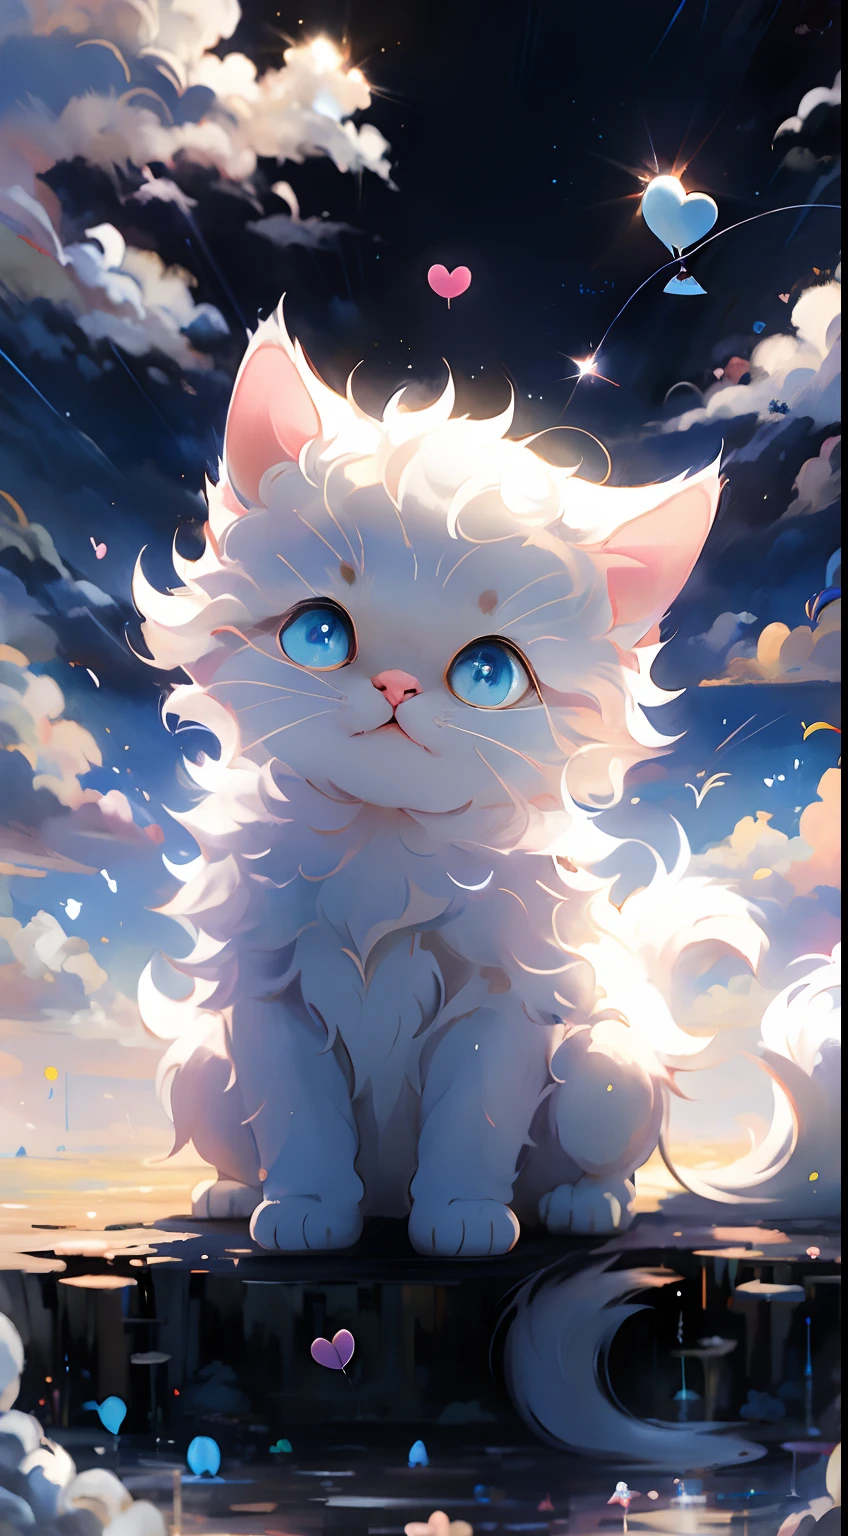 أفضل جودة, com.tmasterpiece, مفصلا:1.4, قطة بيضاء لطيفة, عقد بالون الحب, الخلفية هي السماء الزرقاء والسحب البيضاء。